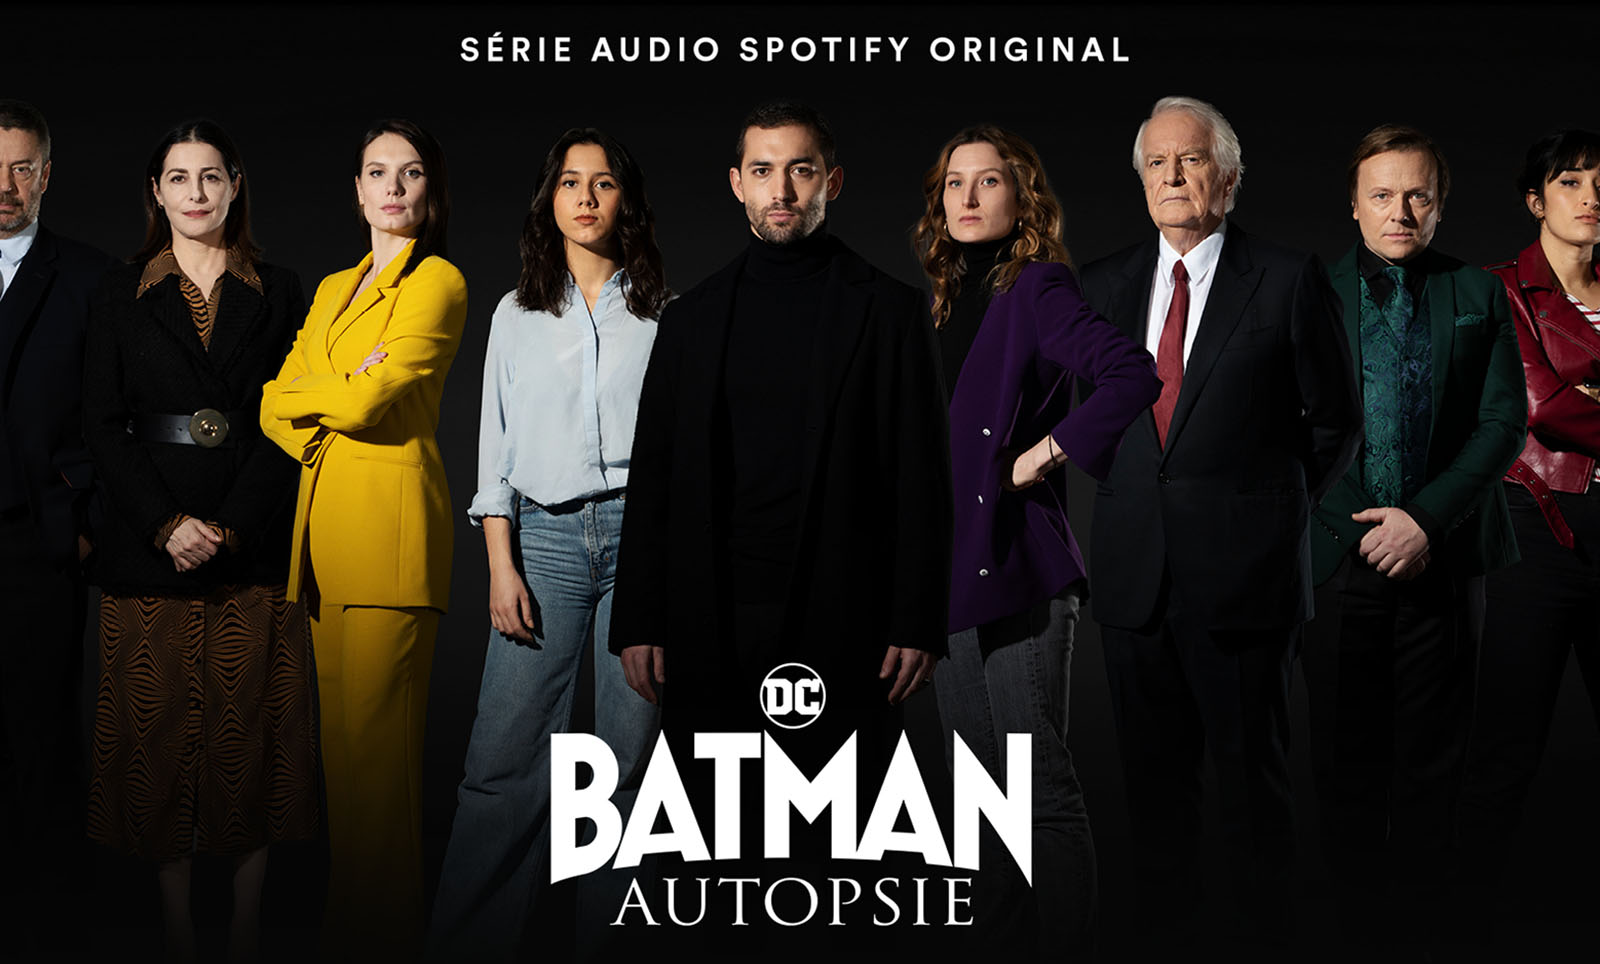 Le casting du podcast Batman de Spotify